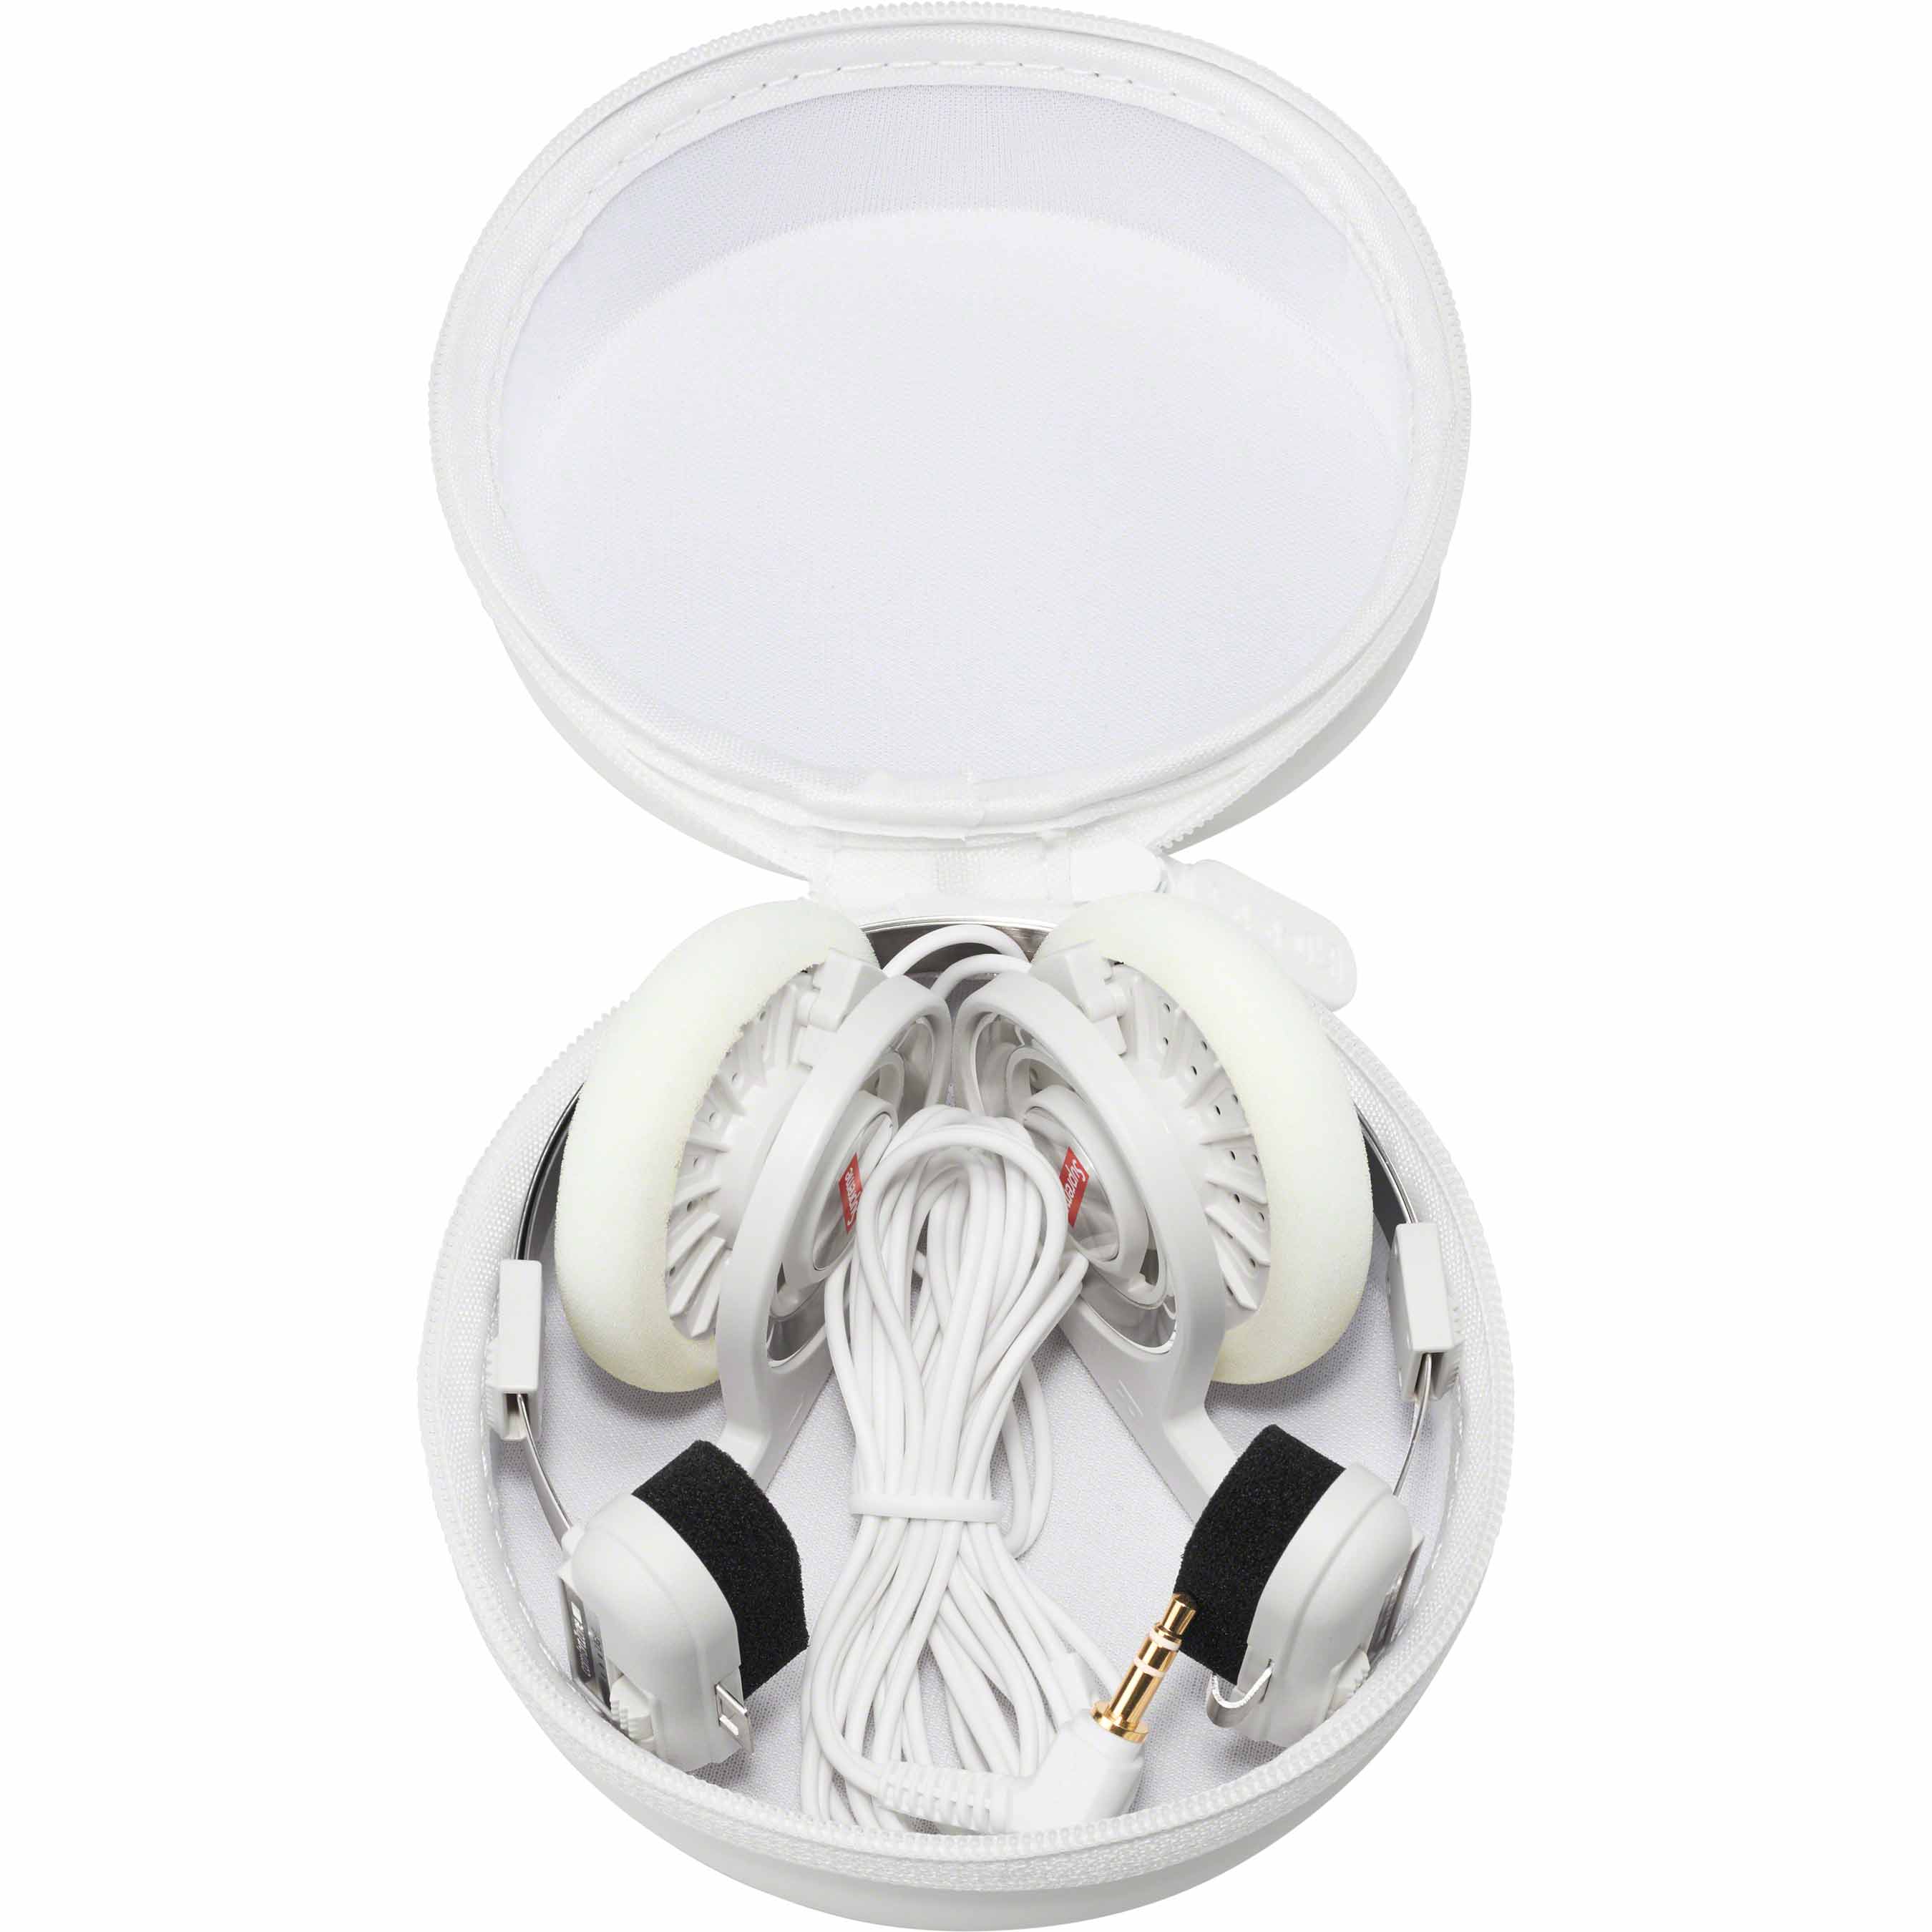 オンラインショップ購入正規品supreme Koss PortaPro Headphones White